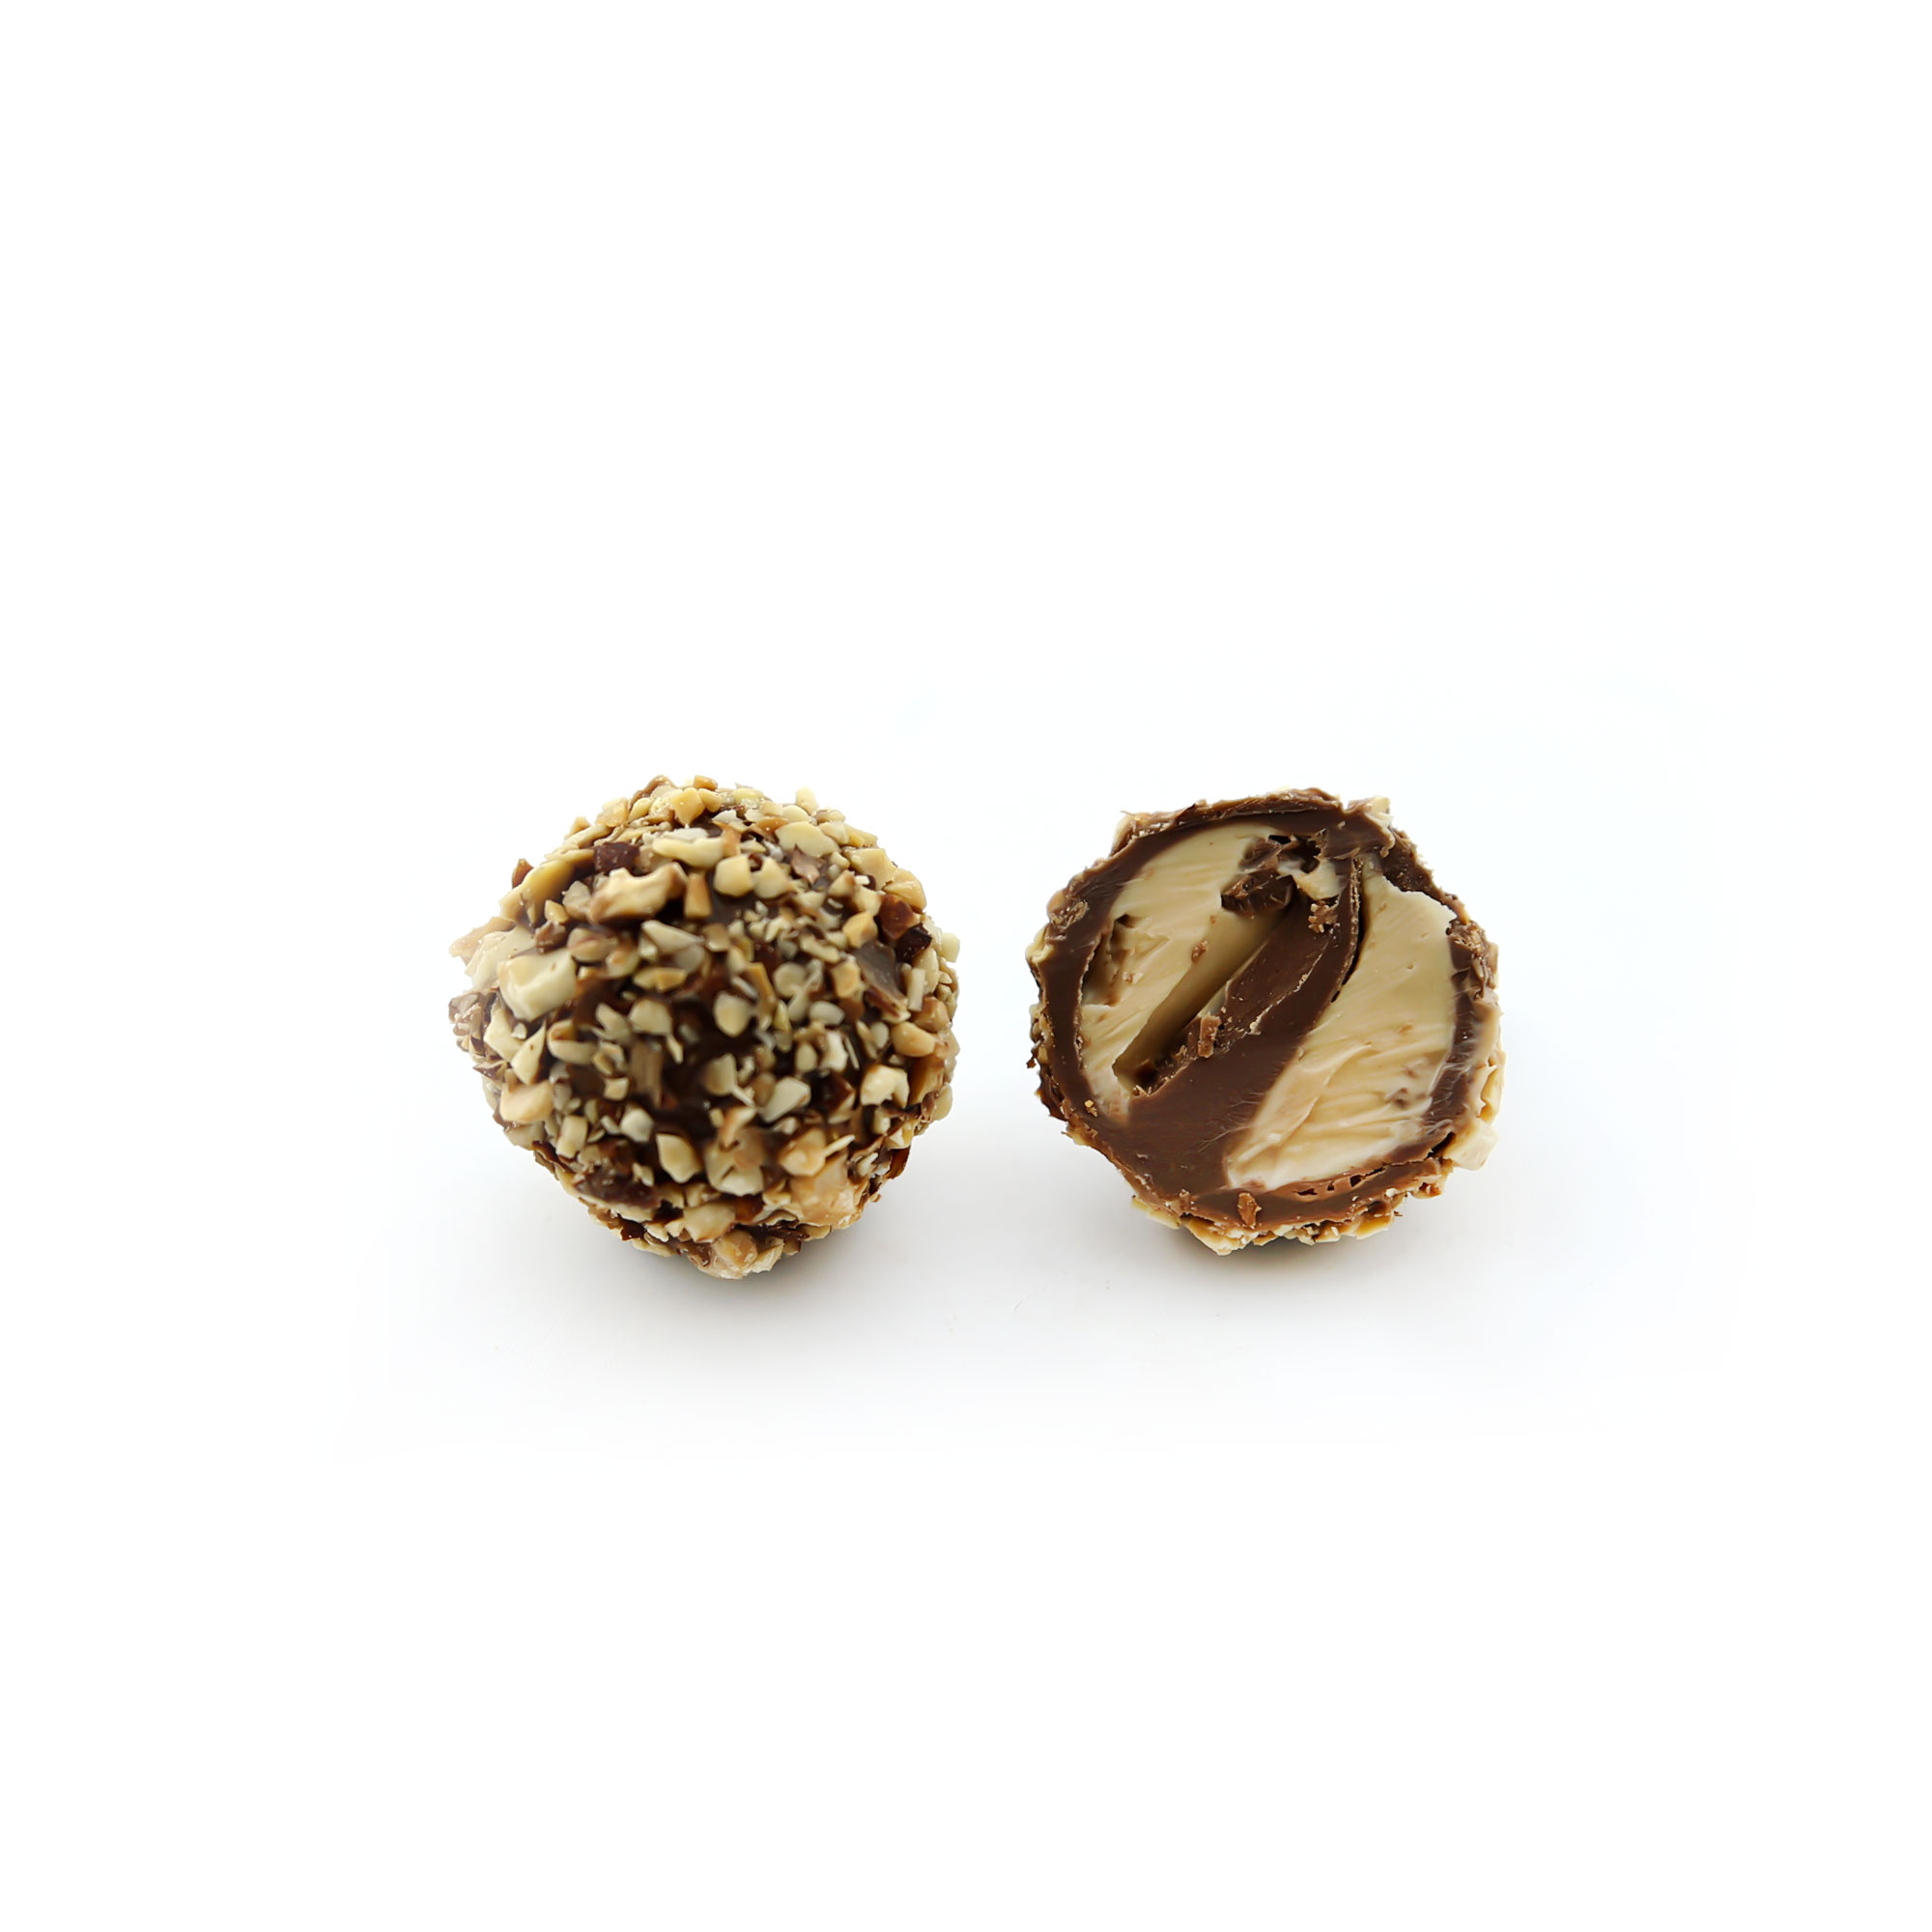 cremino-milk-chocolate belgium chocolate almond truffles